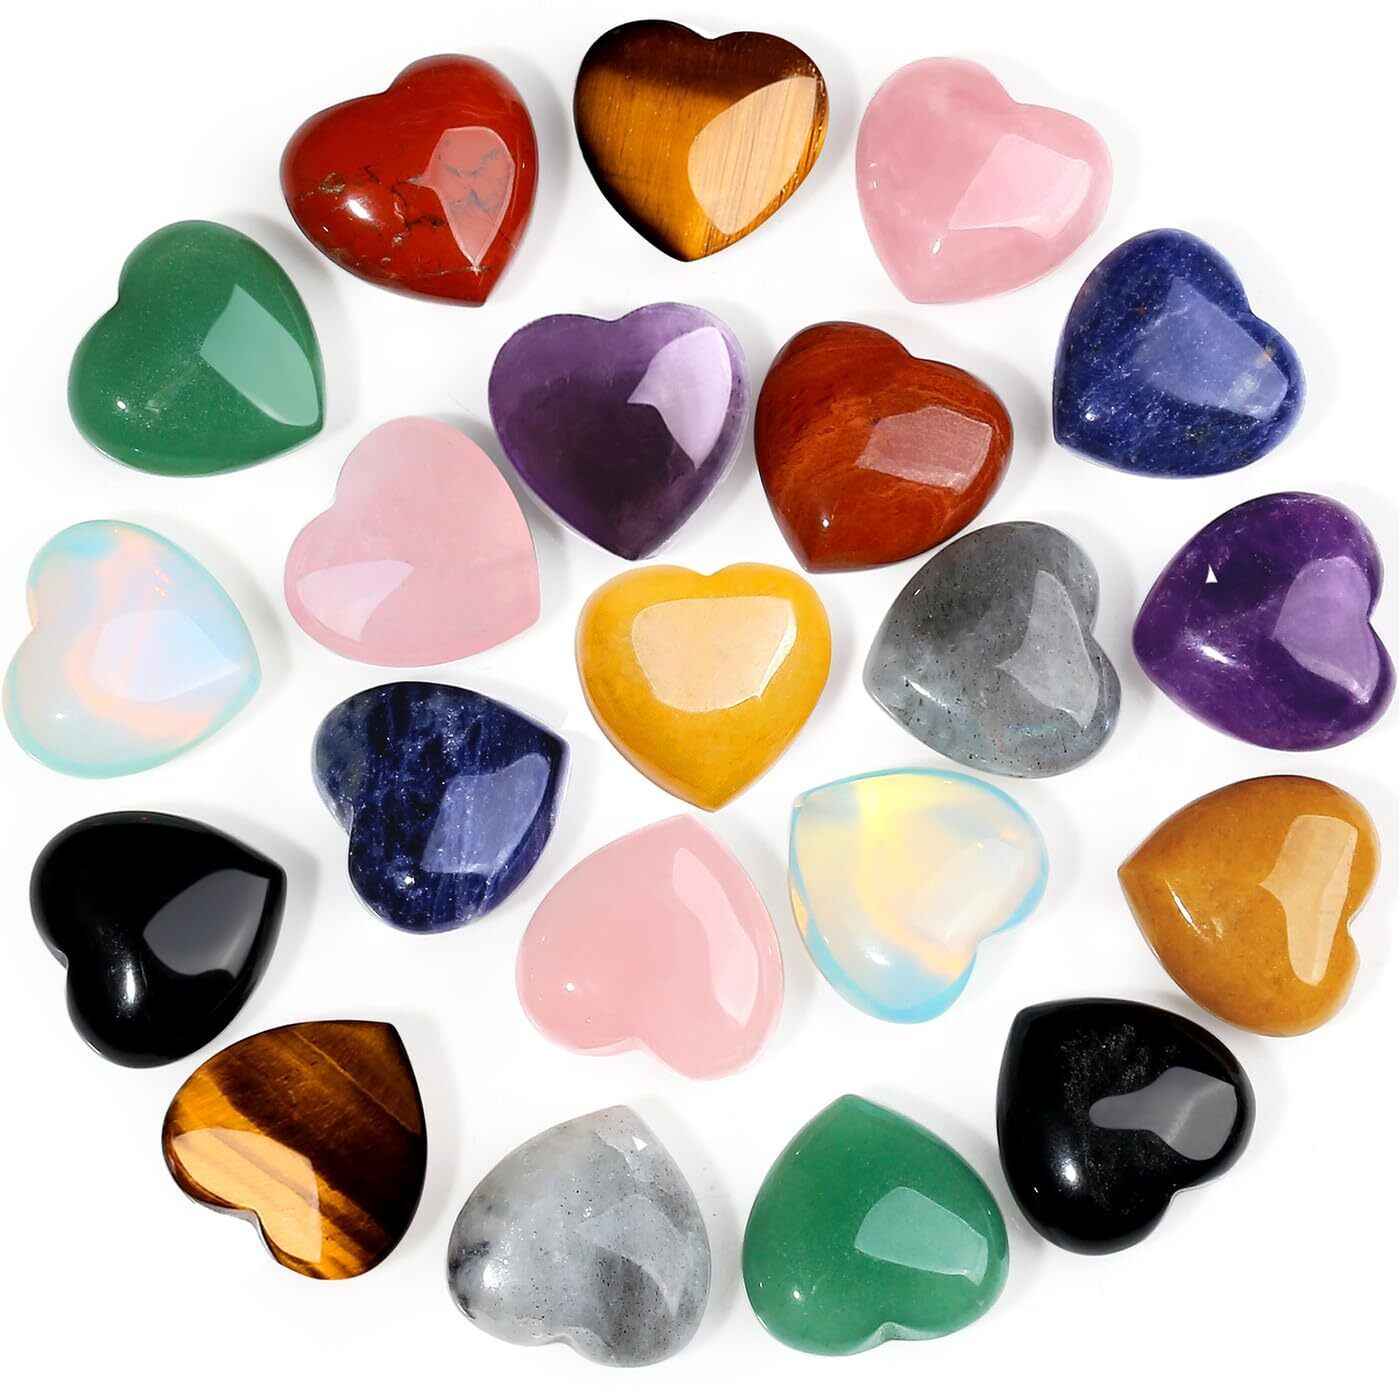 10 PCS de Piedras de Cristal en Forma de Corazon Piedras de Cuarzo Rosa Amatista